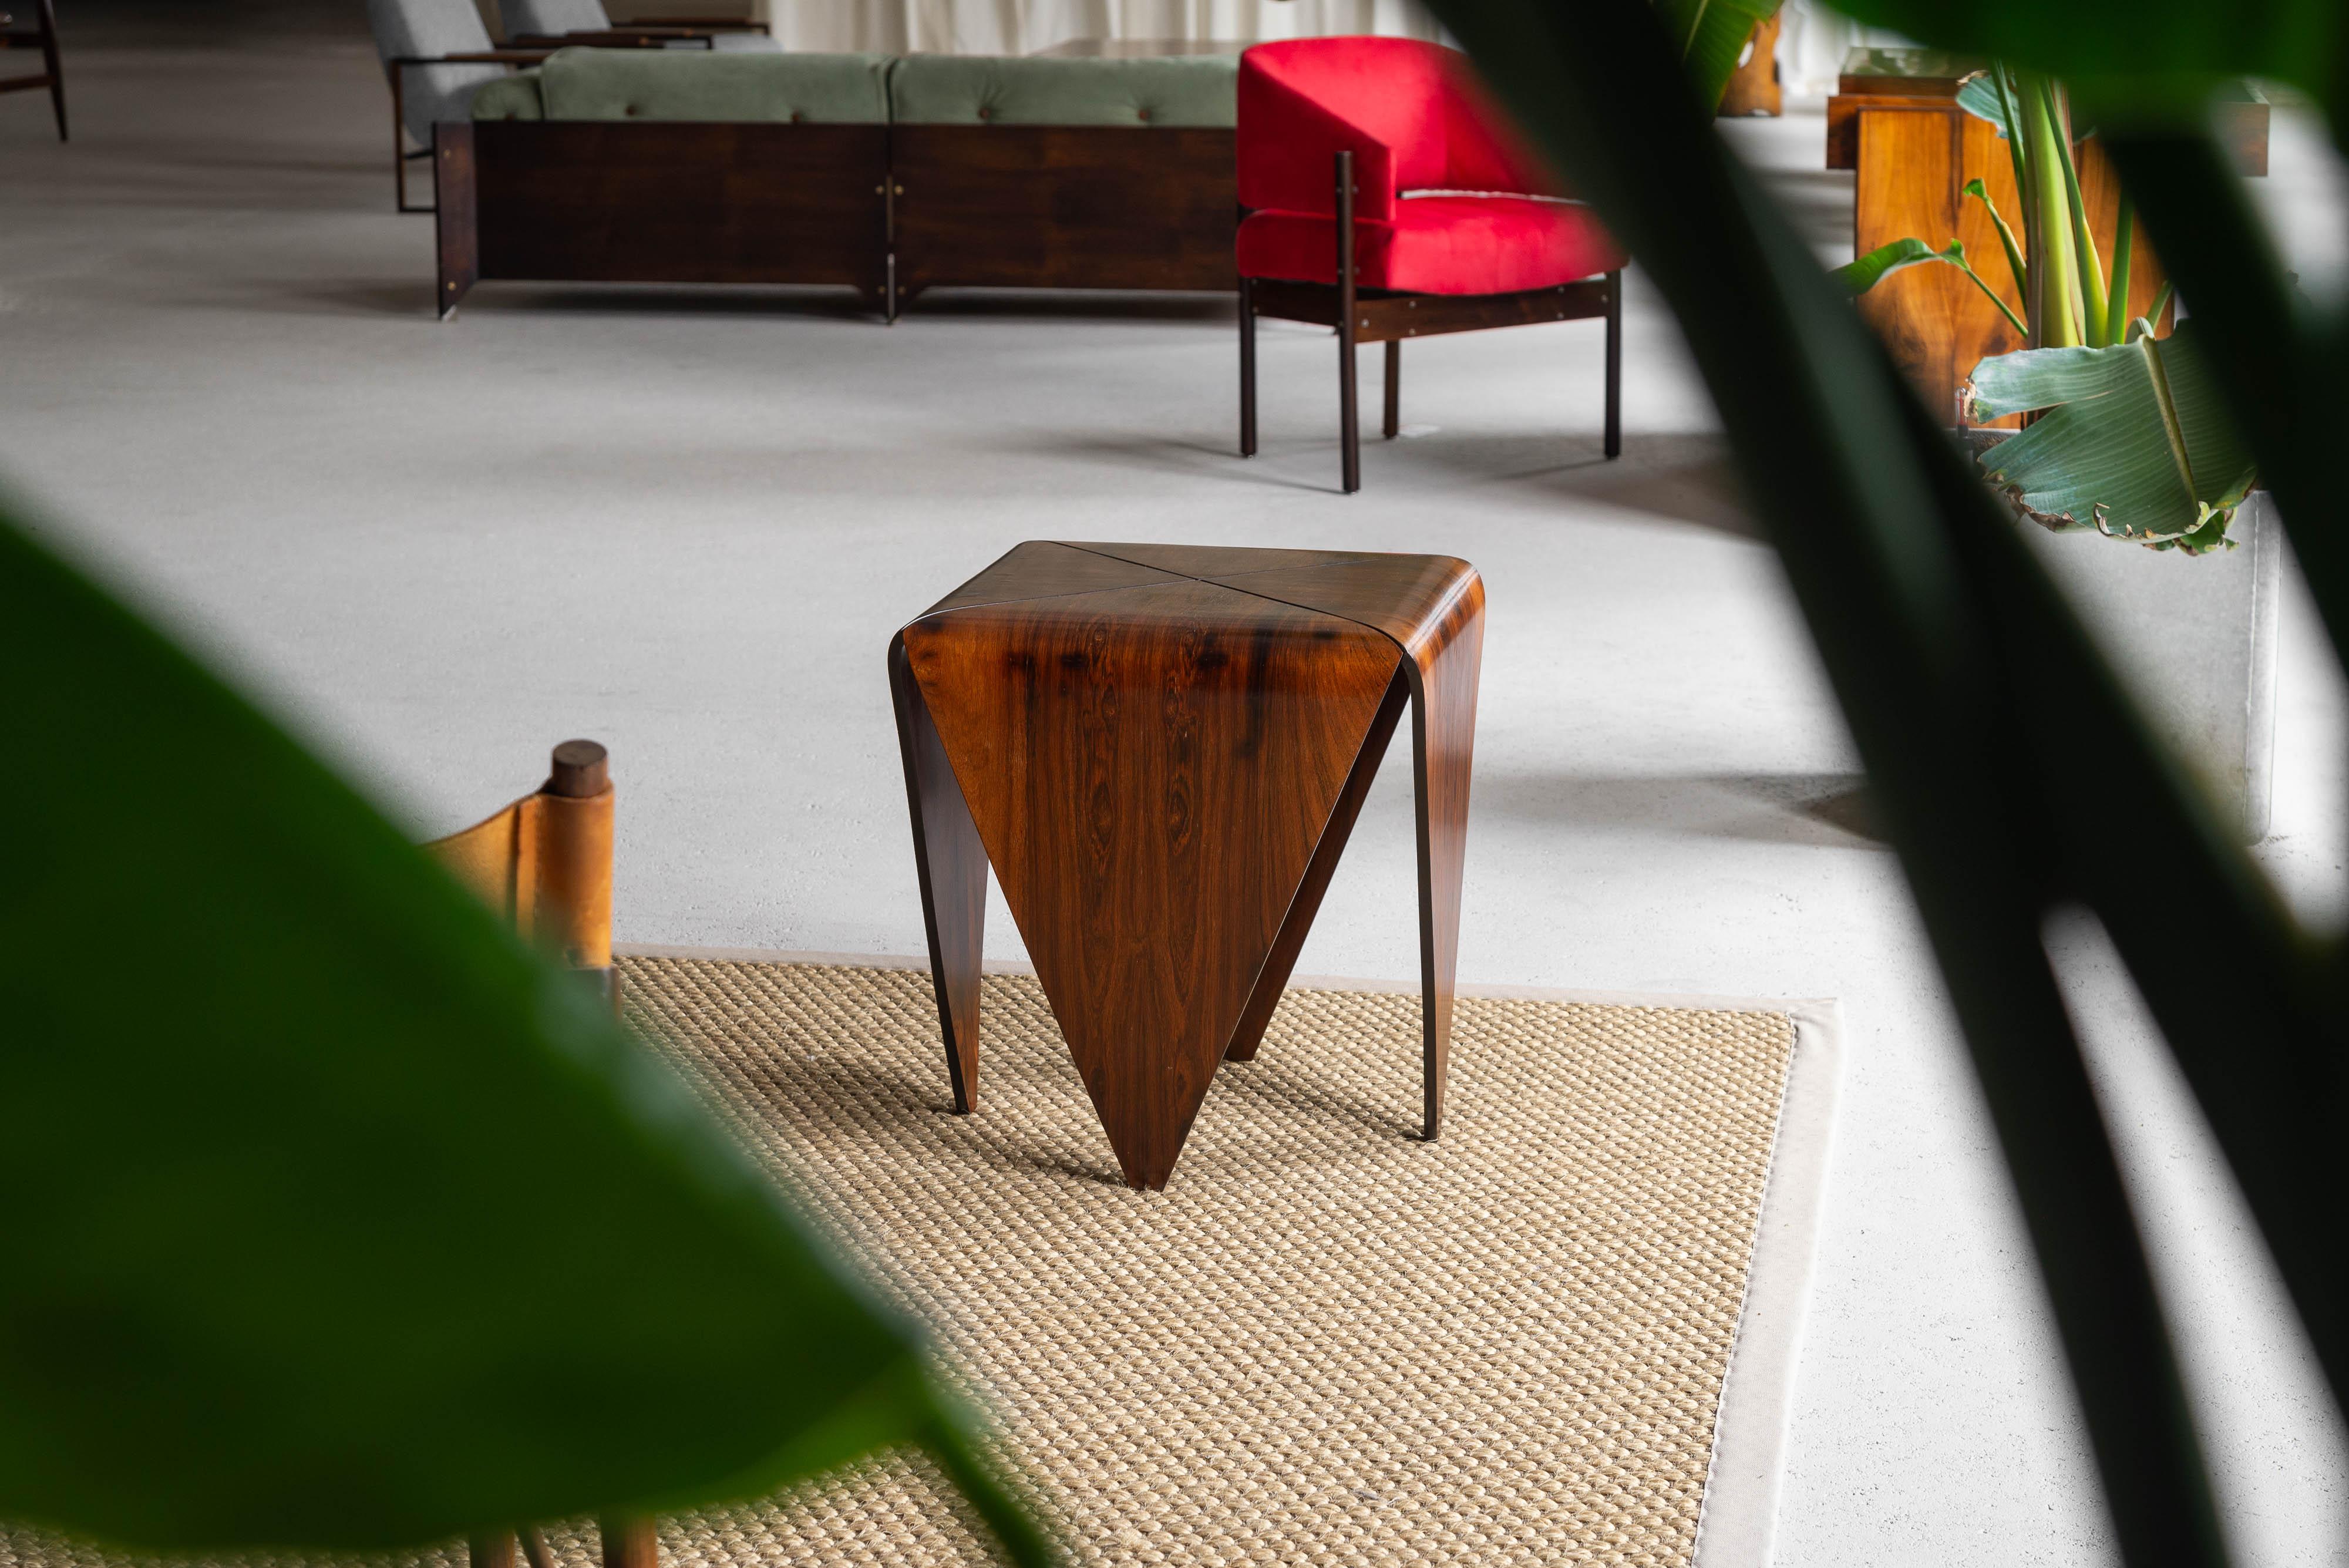 Table d'appoint iconique conçue par Jorge Zalszupin et fabriquée par L'Atelier, Brésil 1960. L'un des designs/One les plus emblématiques de Zalszupin, en magnifique bois de rose grainé. Les structures en papier plié de l'origami constituent